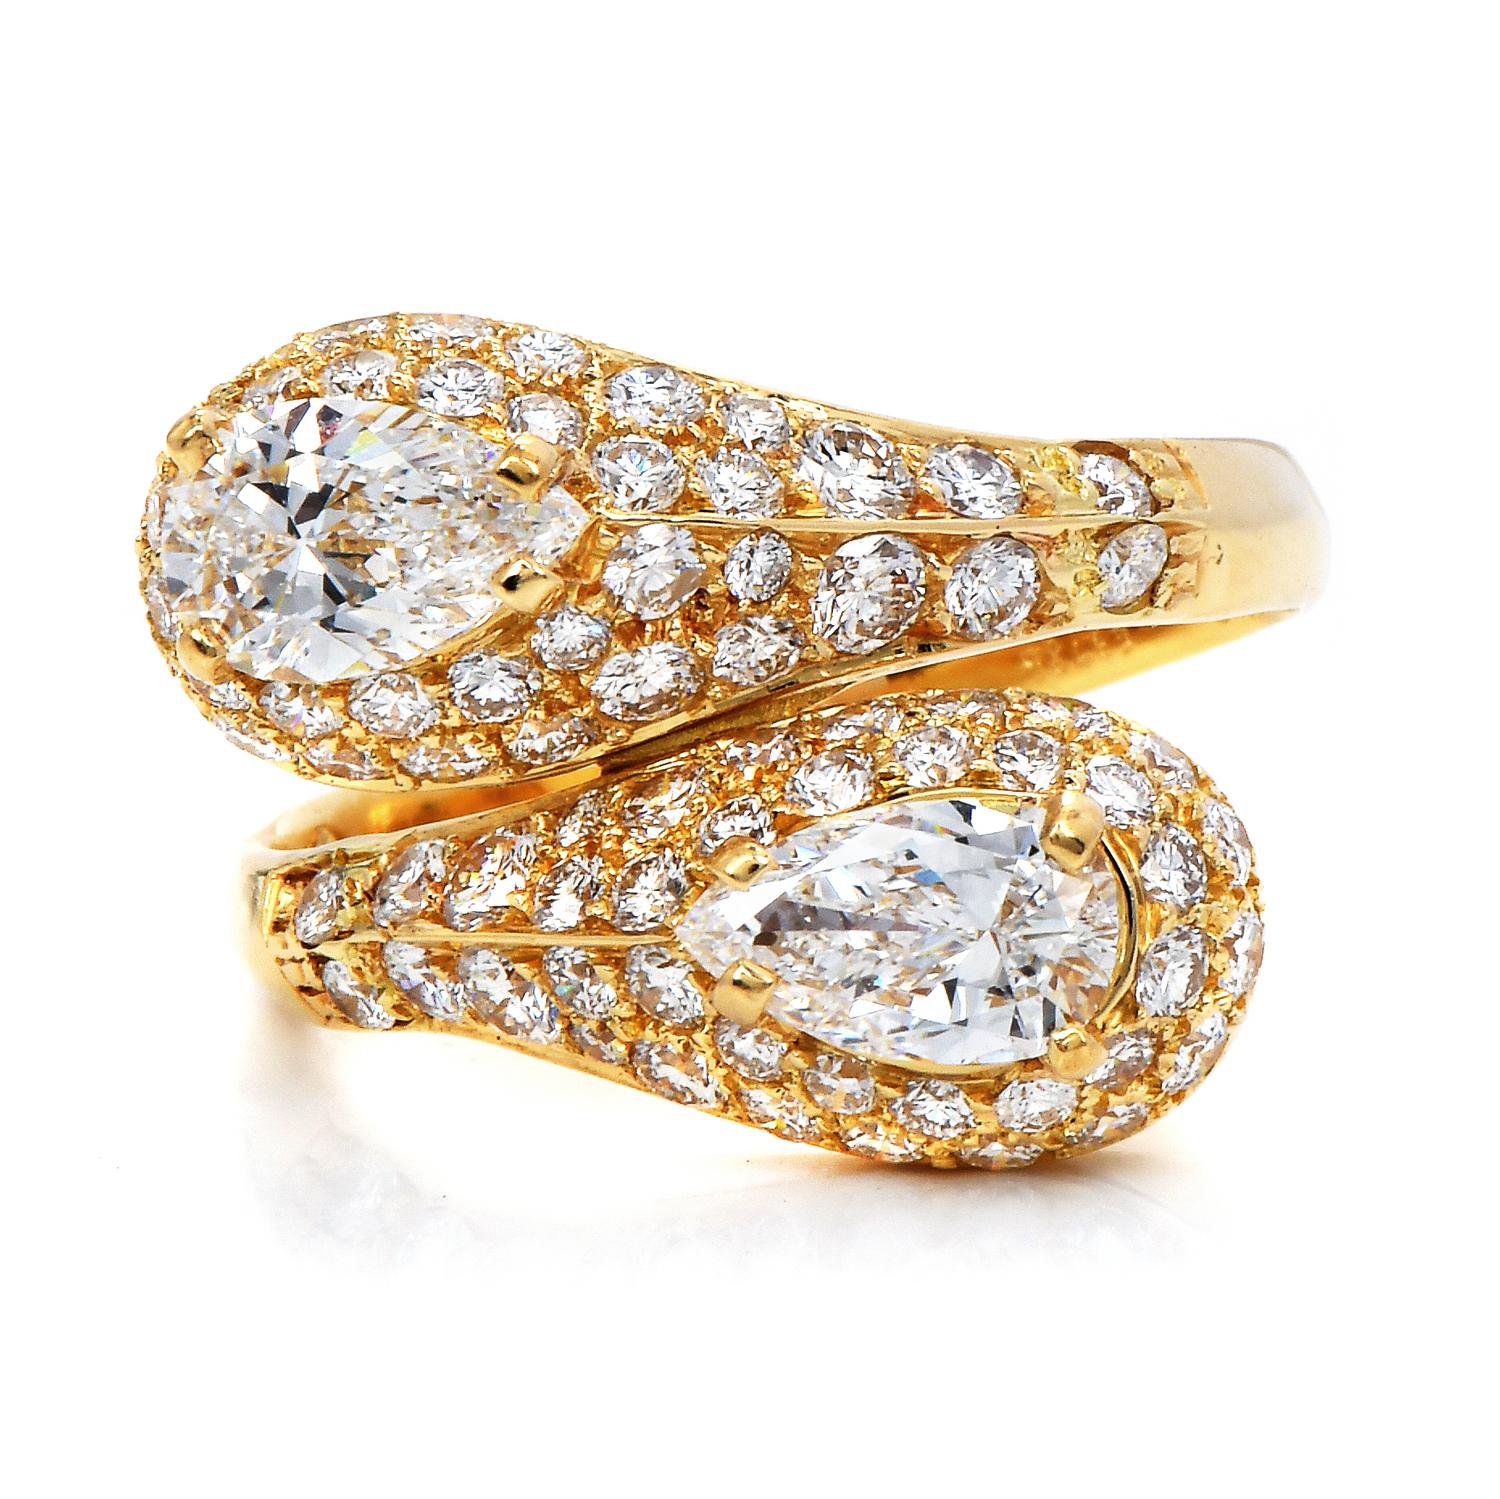 Dieser Bypass-Diamantring ist ein herausragendes Beispiel für die Zeitlosigkeit und Spitzenqualität von Cartier.

Gefertigt aus massivem 18K Gelbgold, alles original.

Zwei funkelnde, in Zacken gefasste echte Diamanten im Birnenschliff krönen diesen